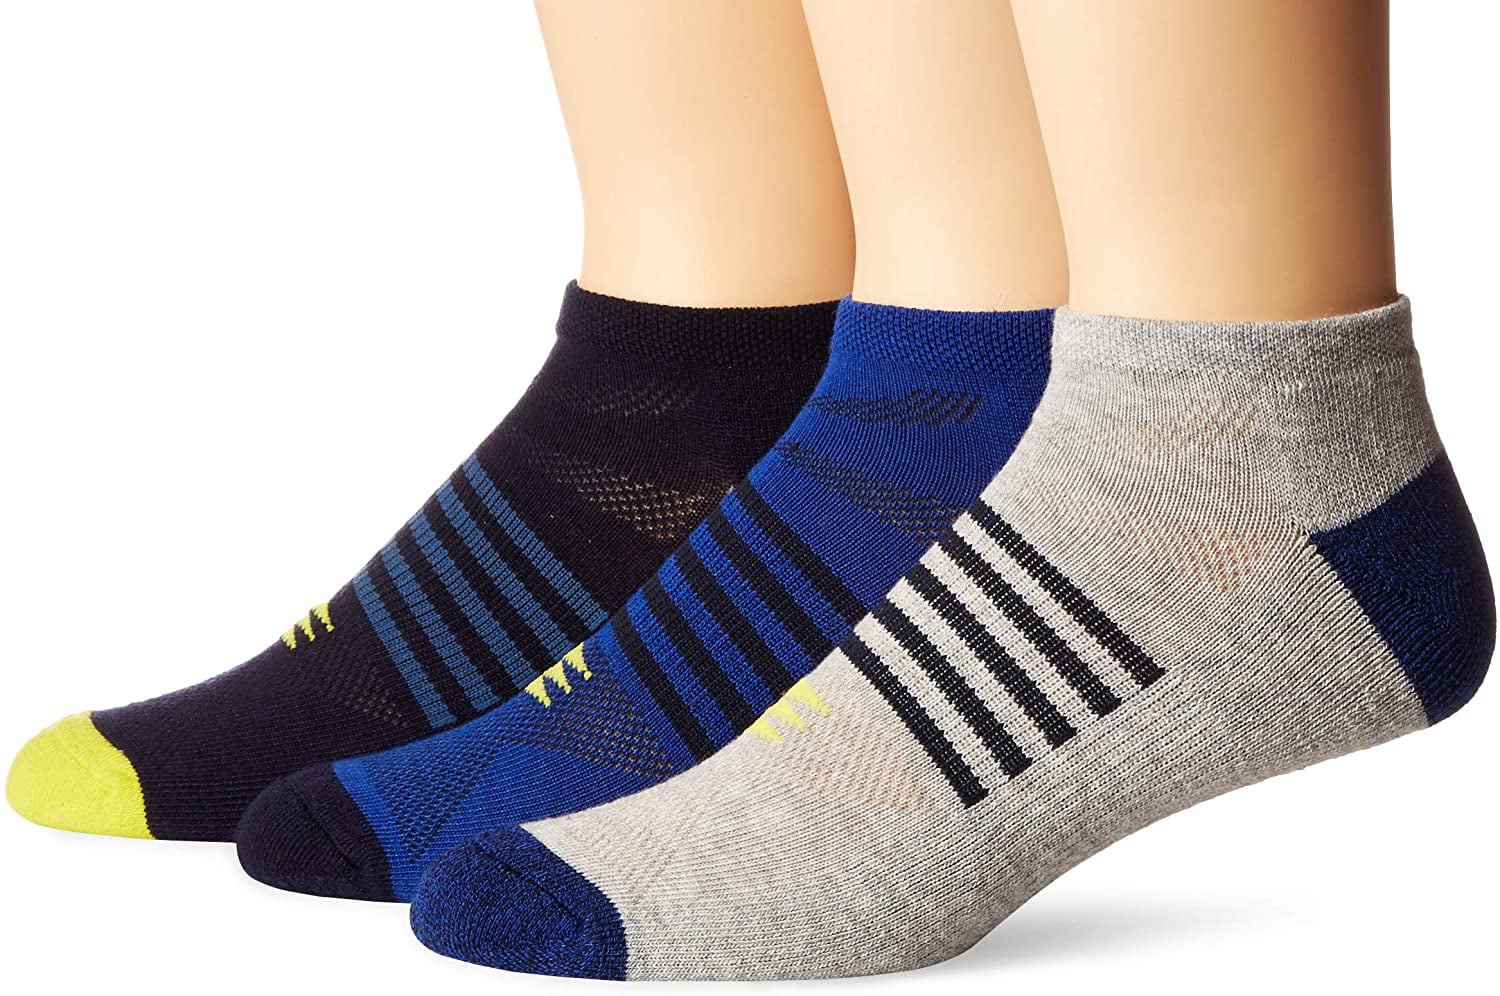 PowerSox Men's 3-Pack Cushion Boot Socks Black Sock Size:10-13/Shoe Size 6-12 